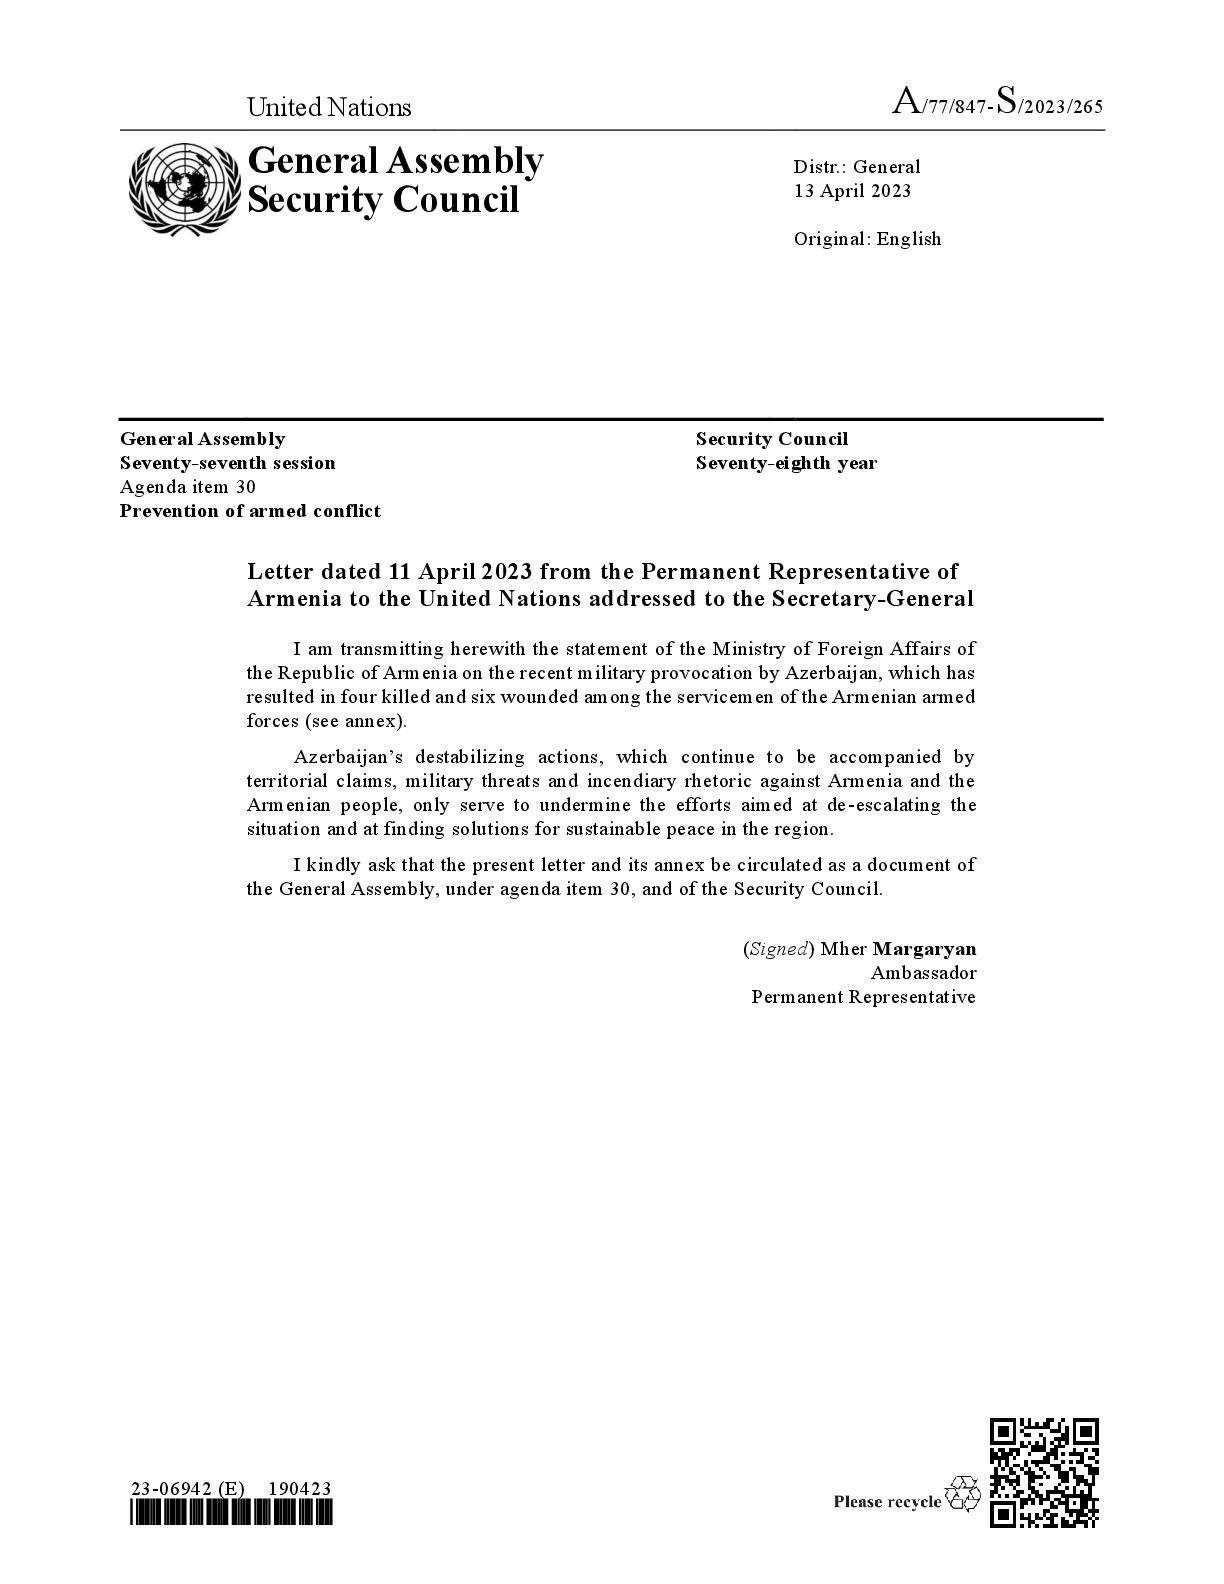 ՀՀ ԱԳՆ հայտարարությունն Ադրբեջանի կողմից իրականացված ռազմական սադրանքի վերաբերյալ